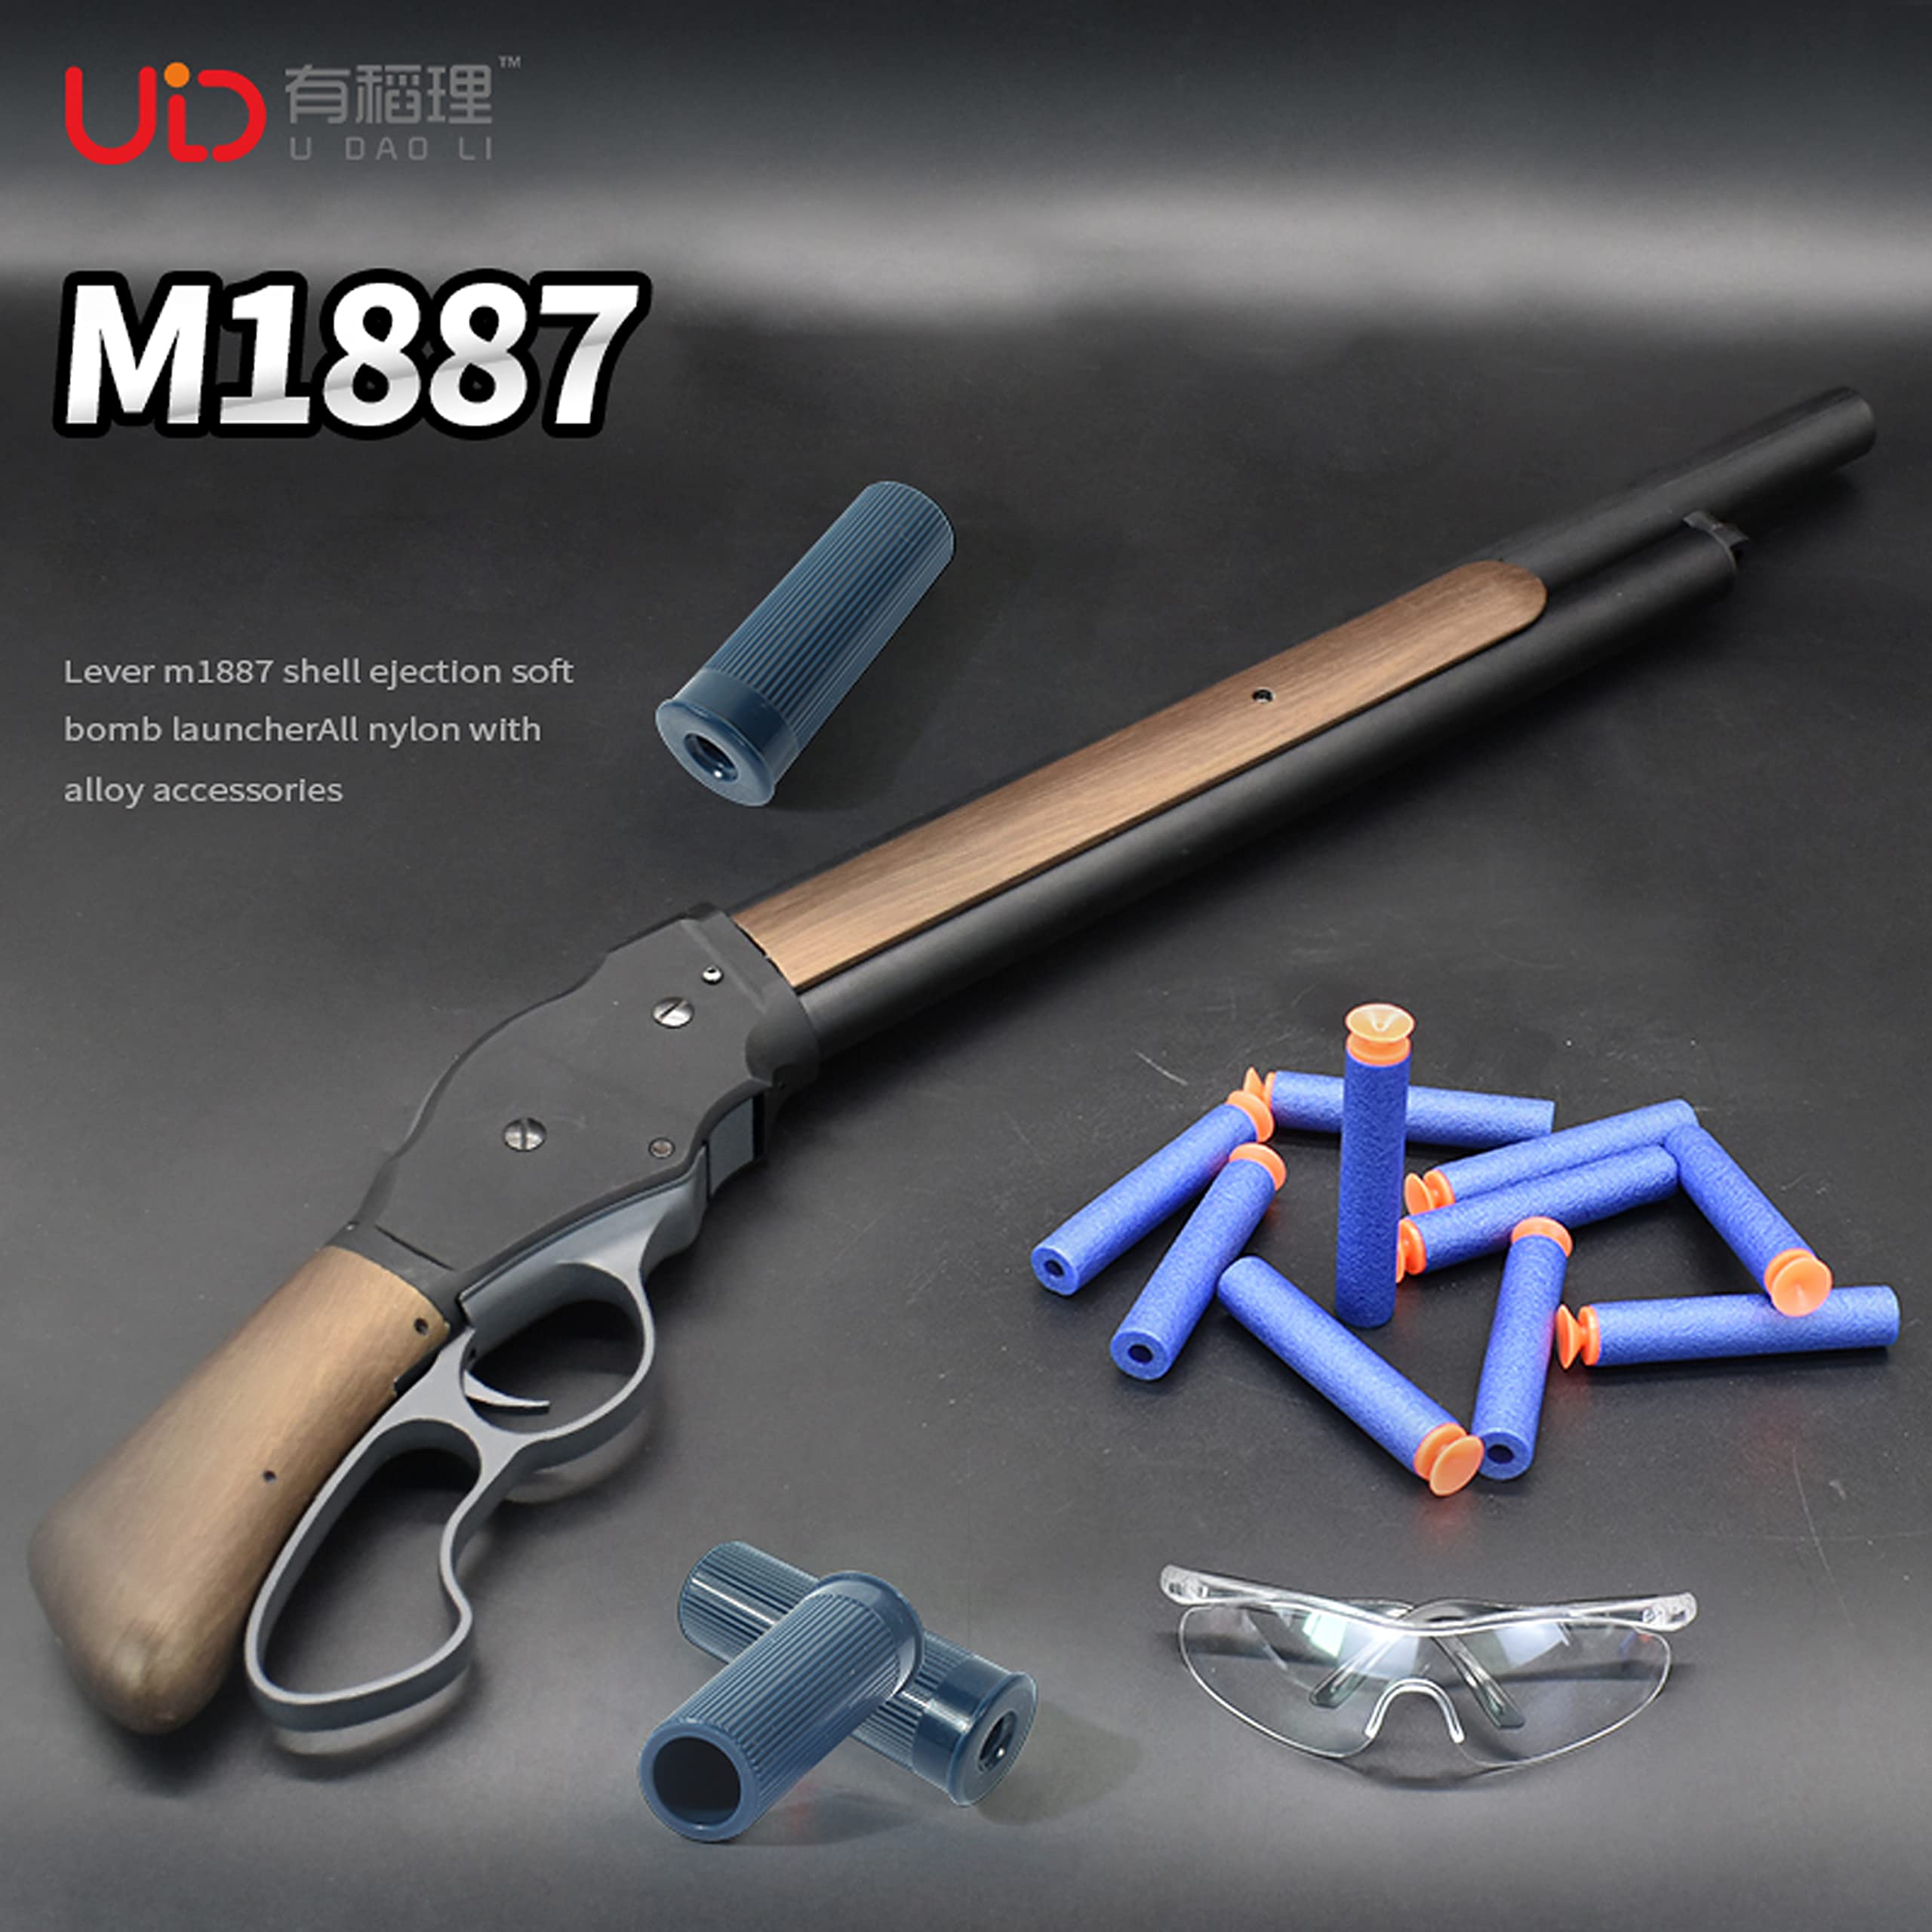 UDL M1887 スポンジ弾 ナーフタイプ